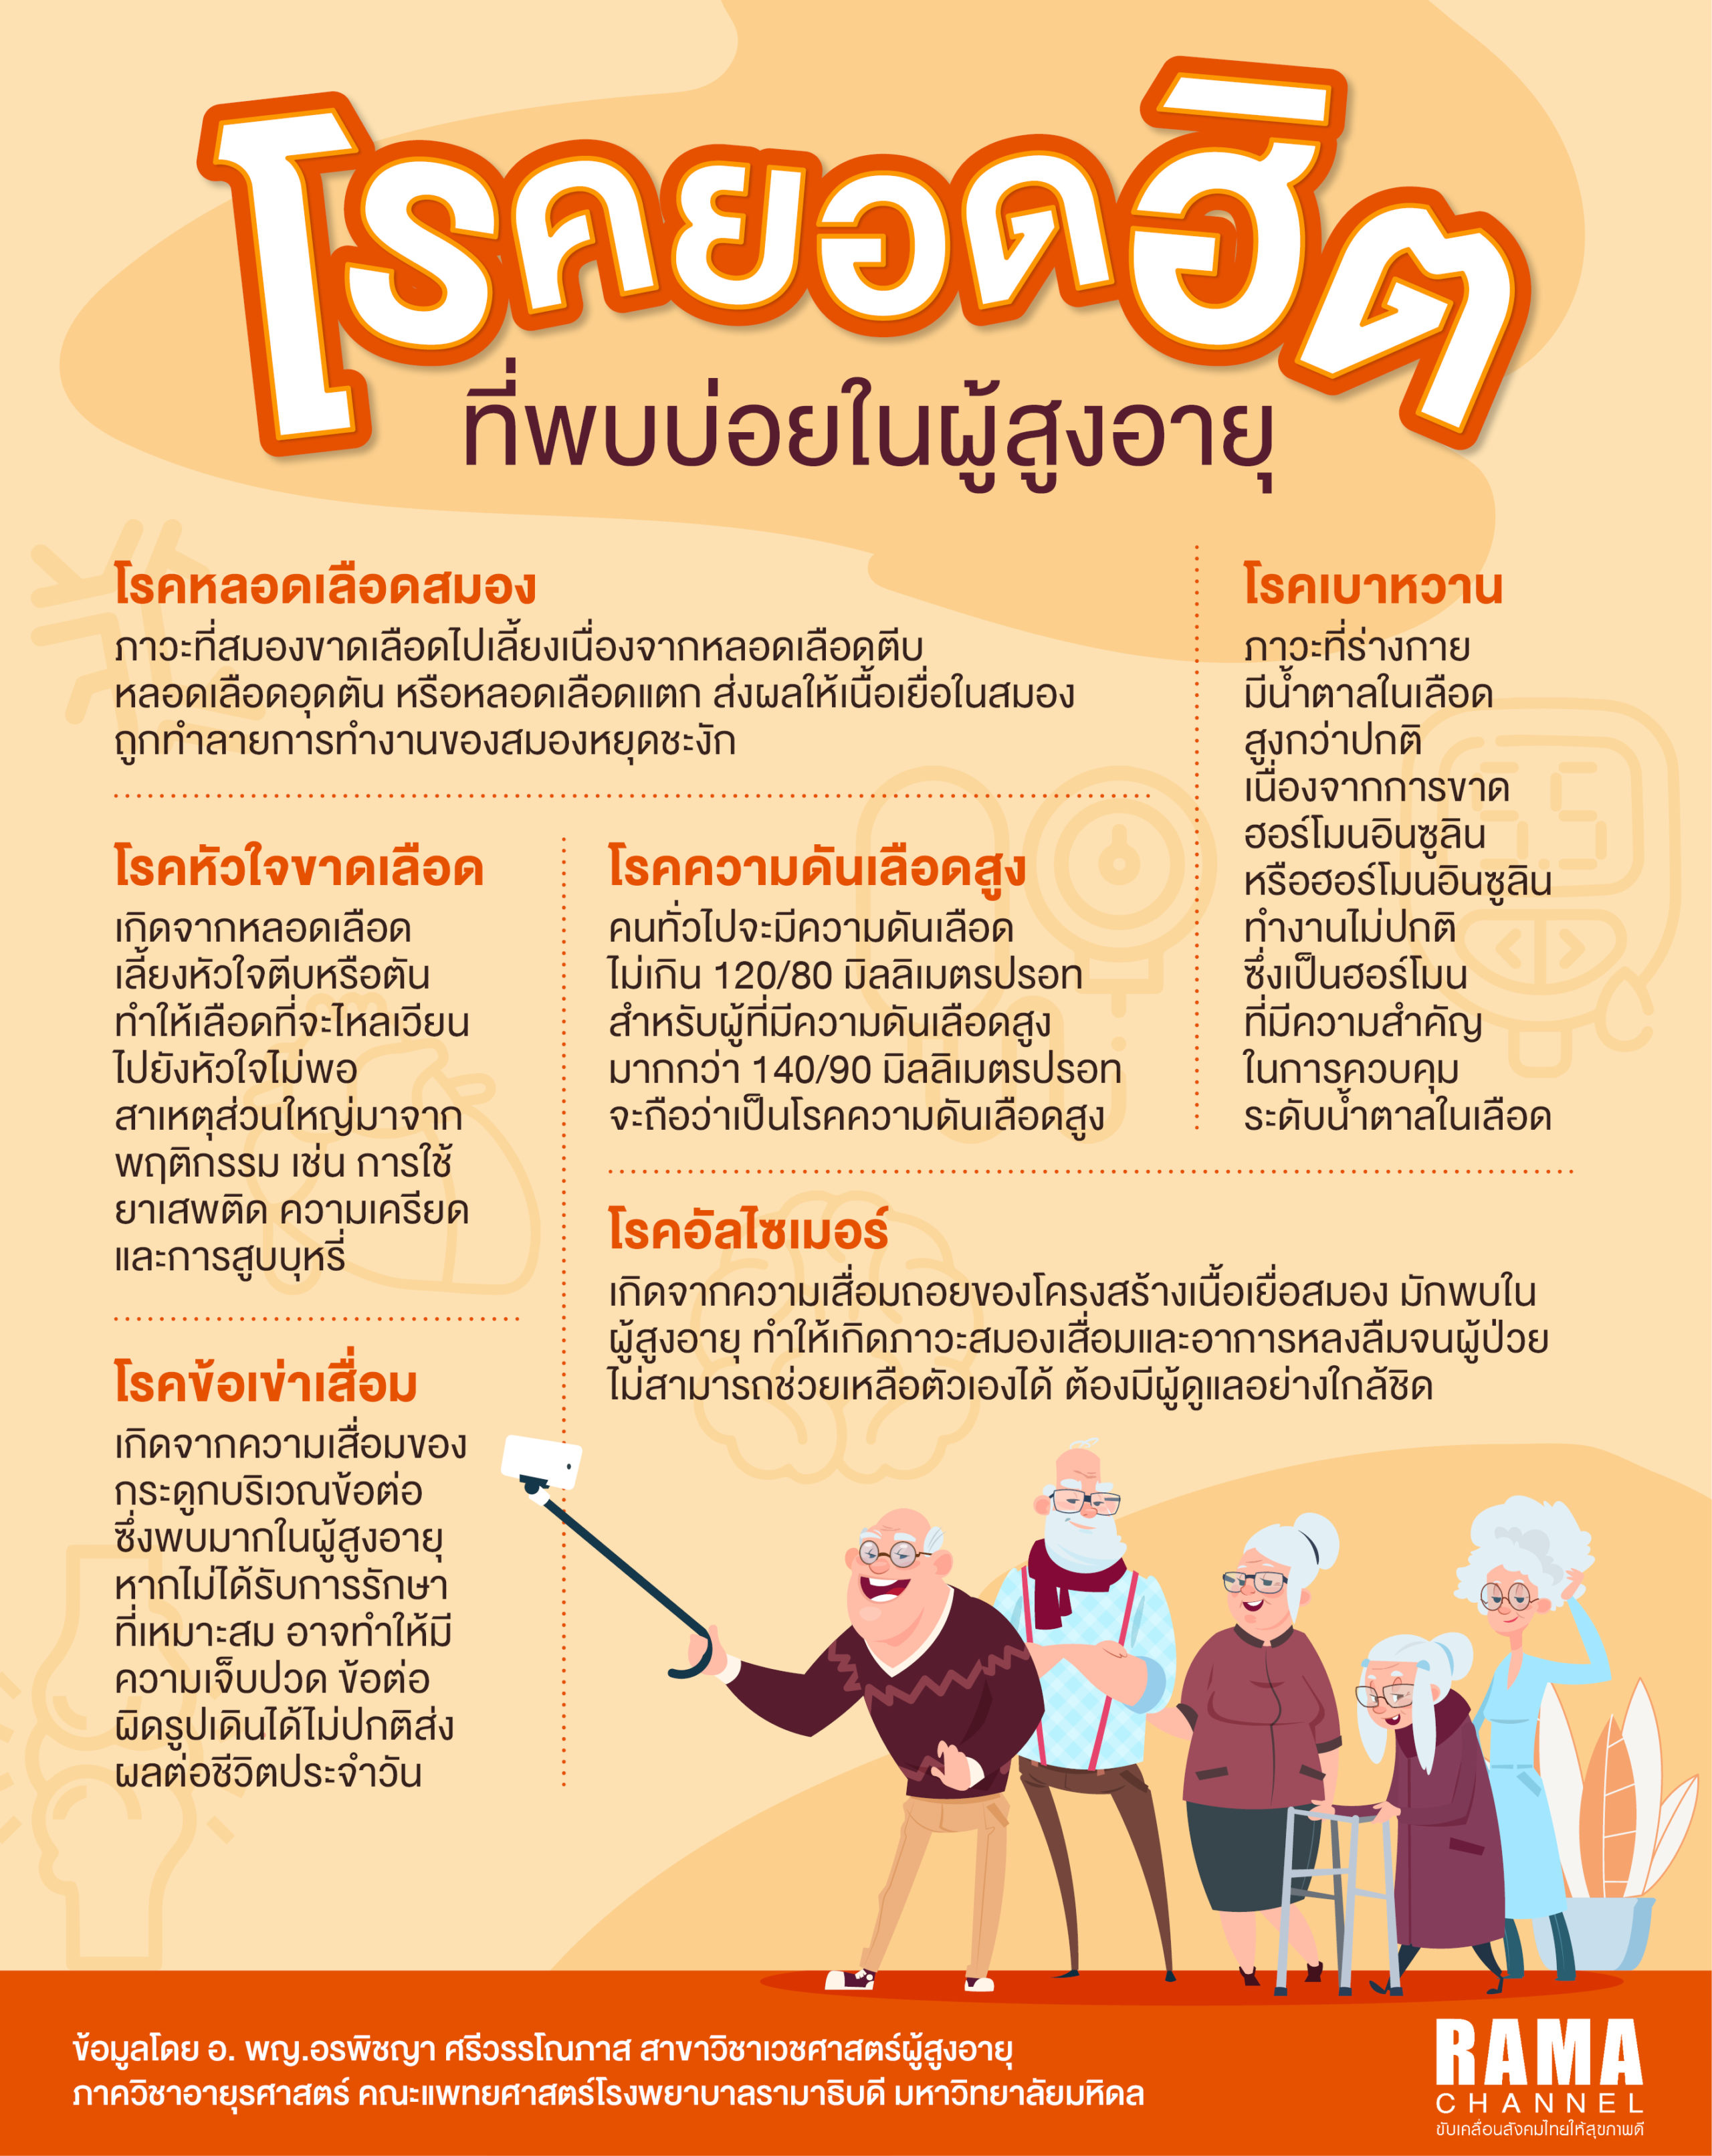 Info Rama โรคผู้สูงอายุ